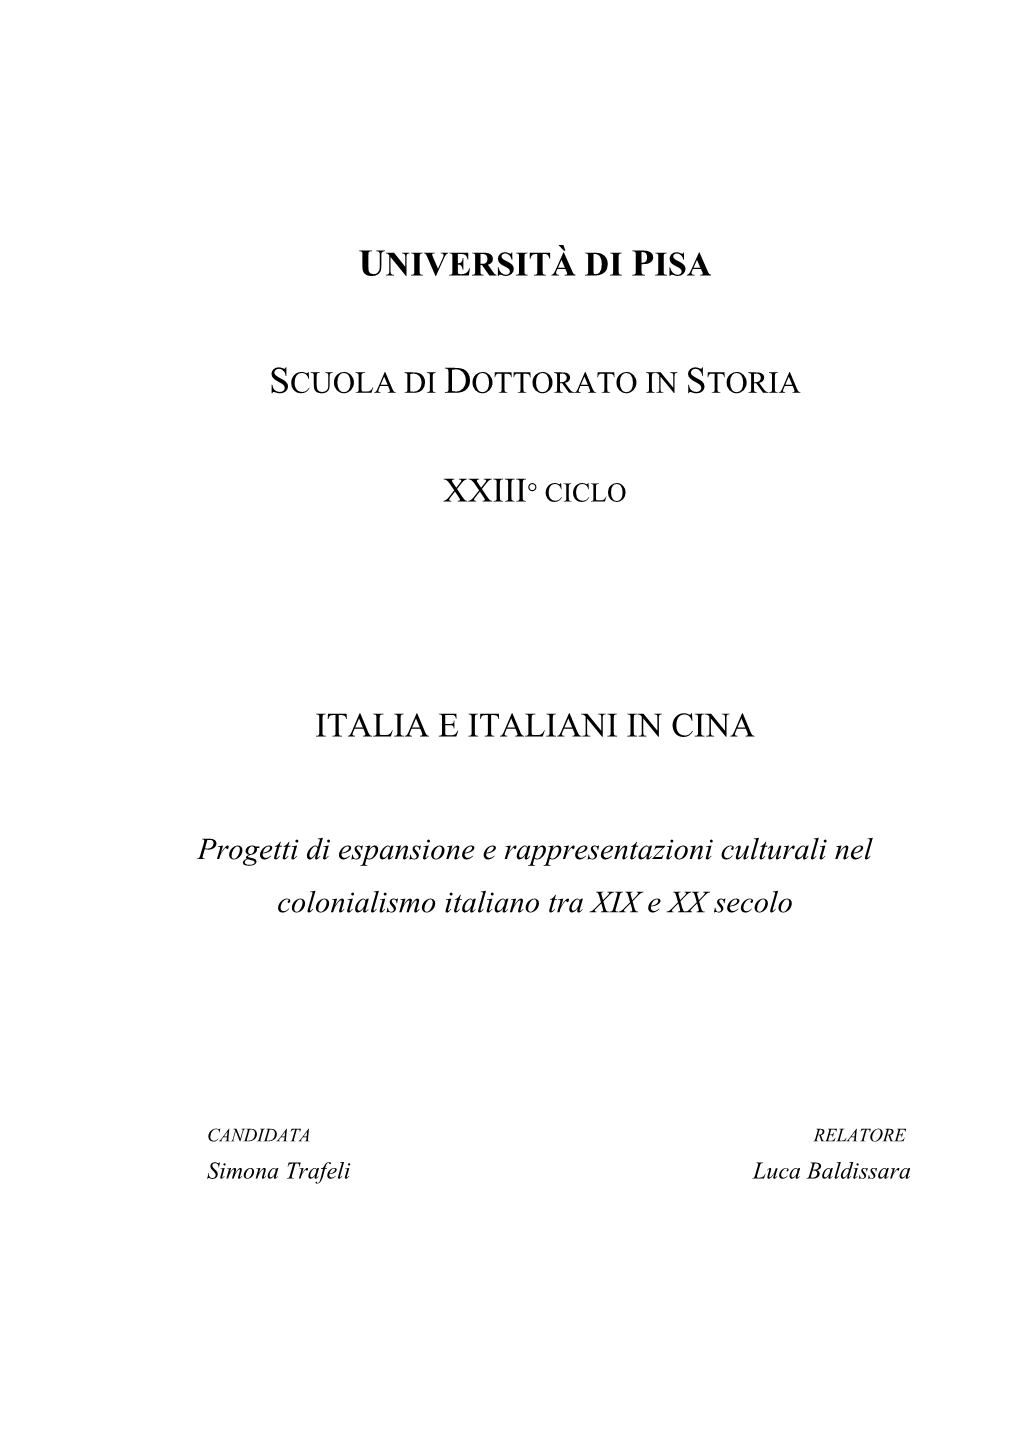 Università Di Pisa Italia E Italiani in Cina